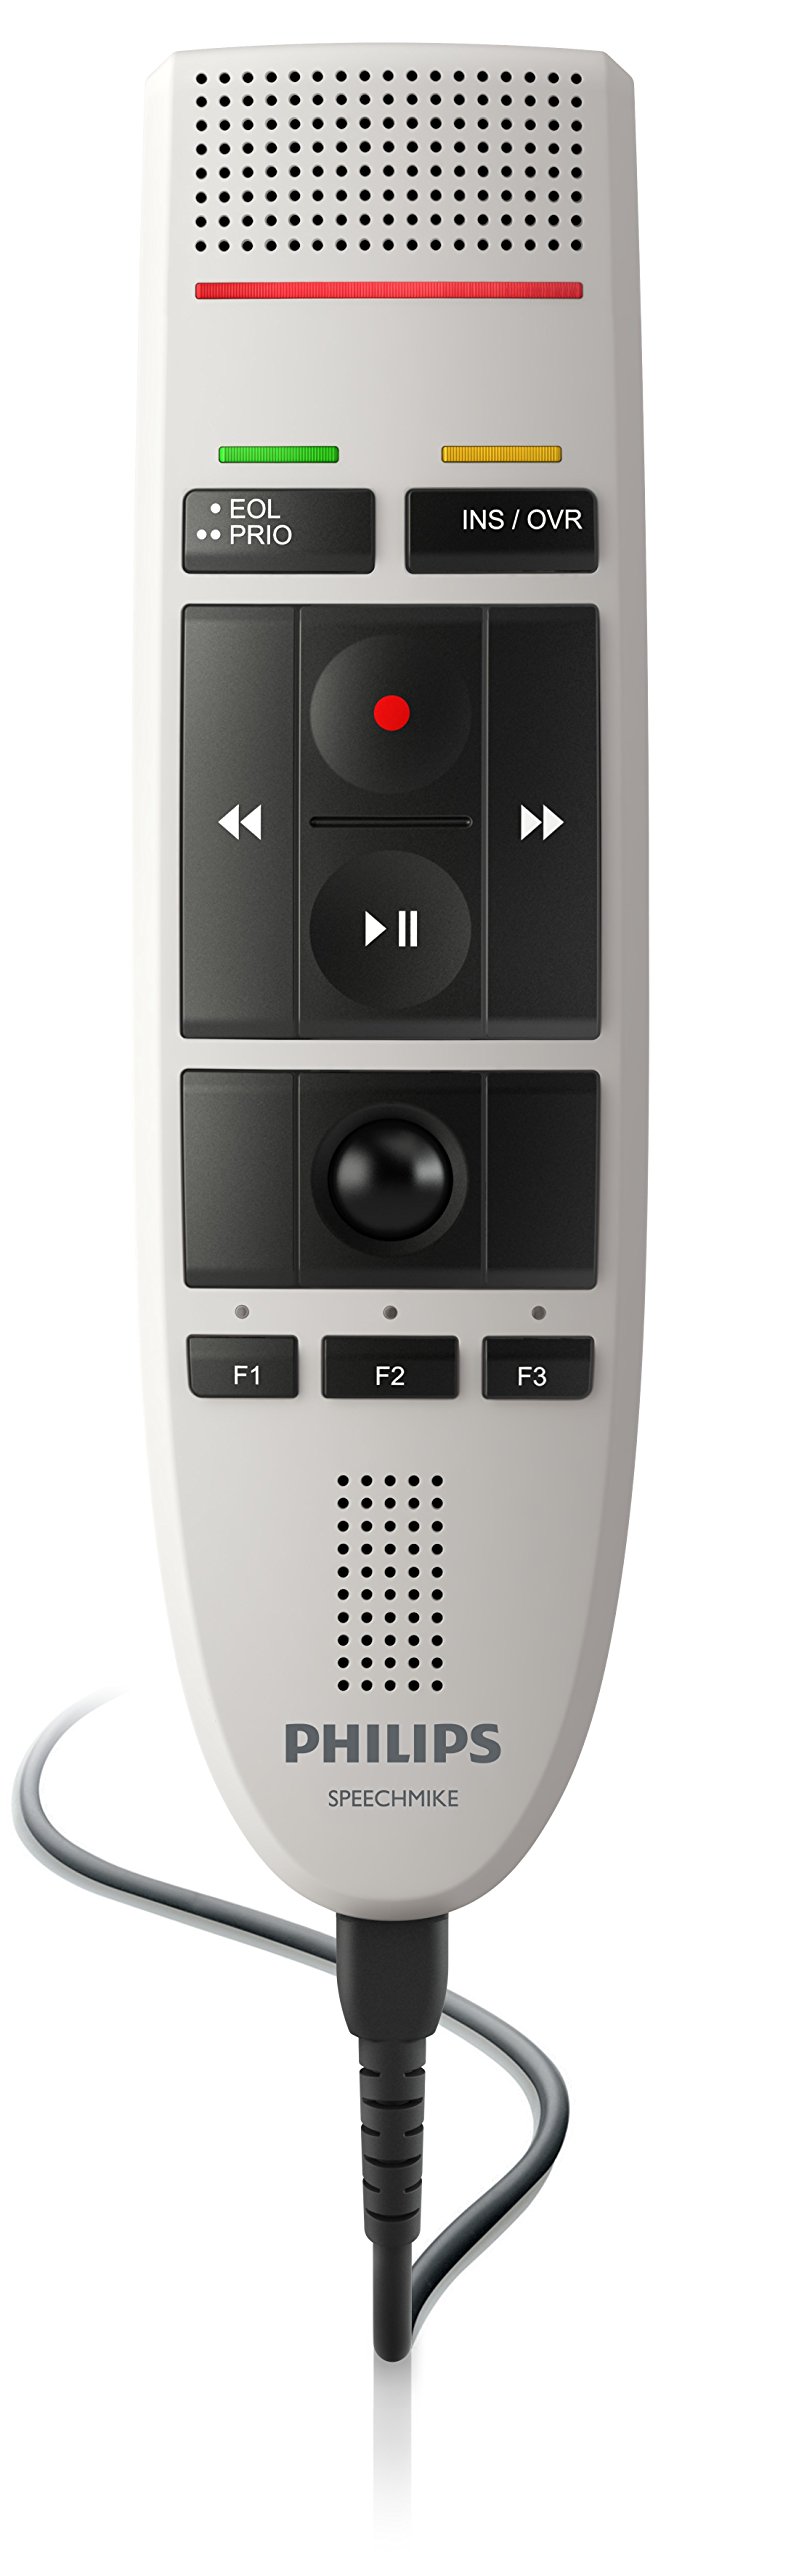 Philips LFH3200 SpeechMike III Pro (プッシュボタン操作) USB プロフェッショナル PC ディクテーション マイク